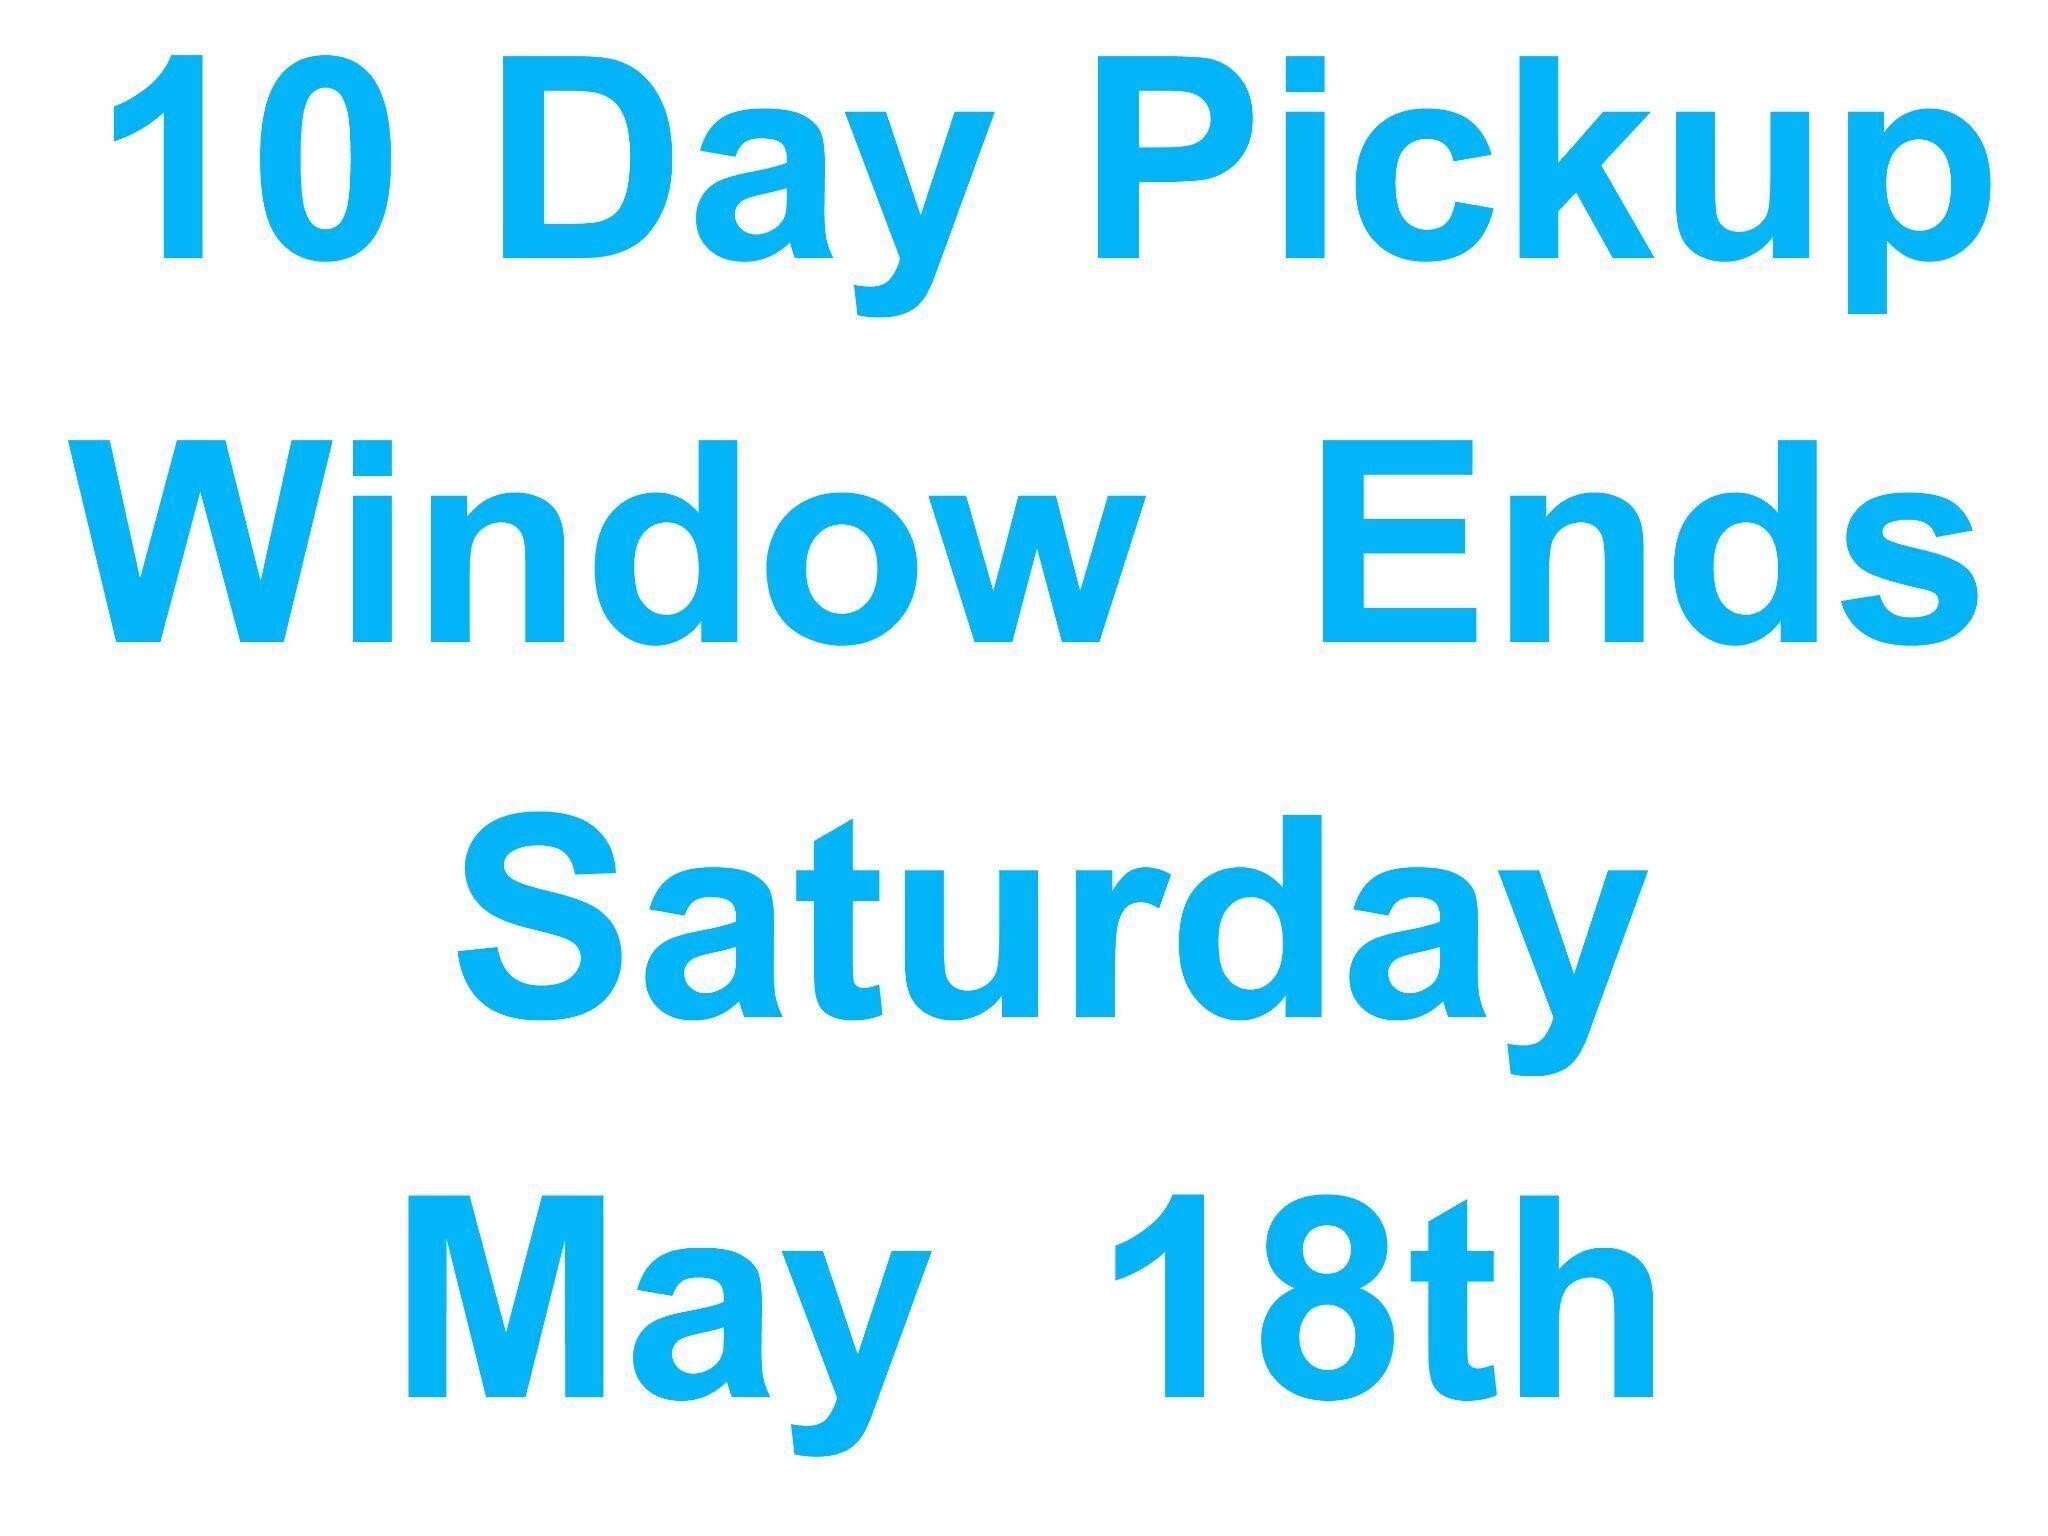 Pickup by Saturday, May 18th